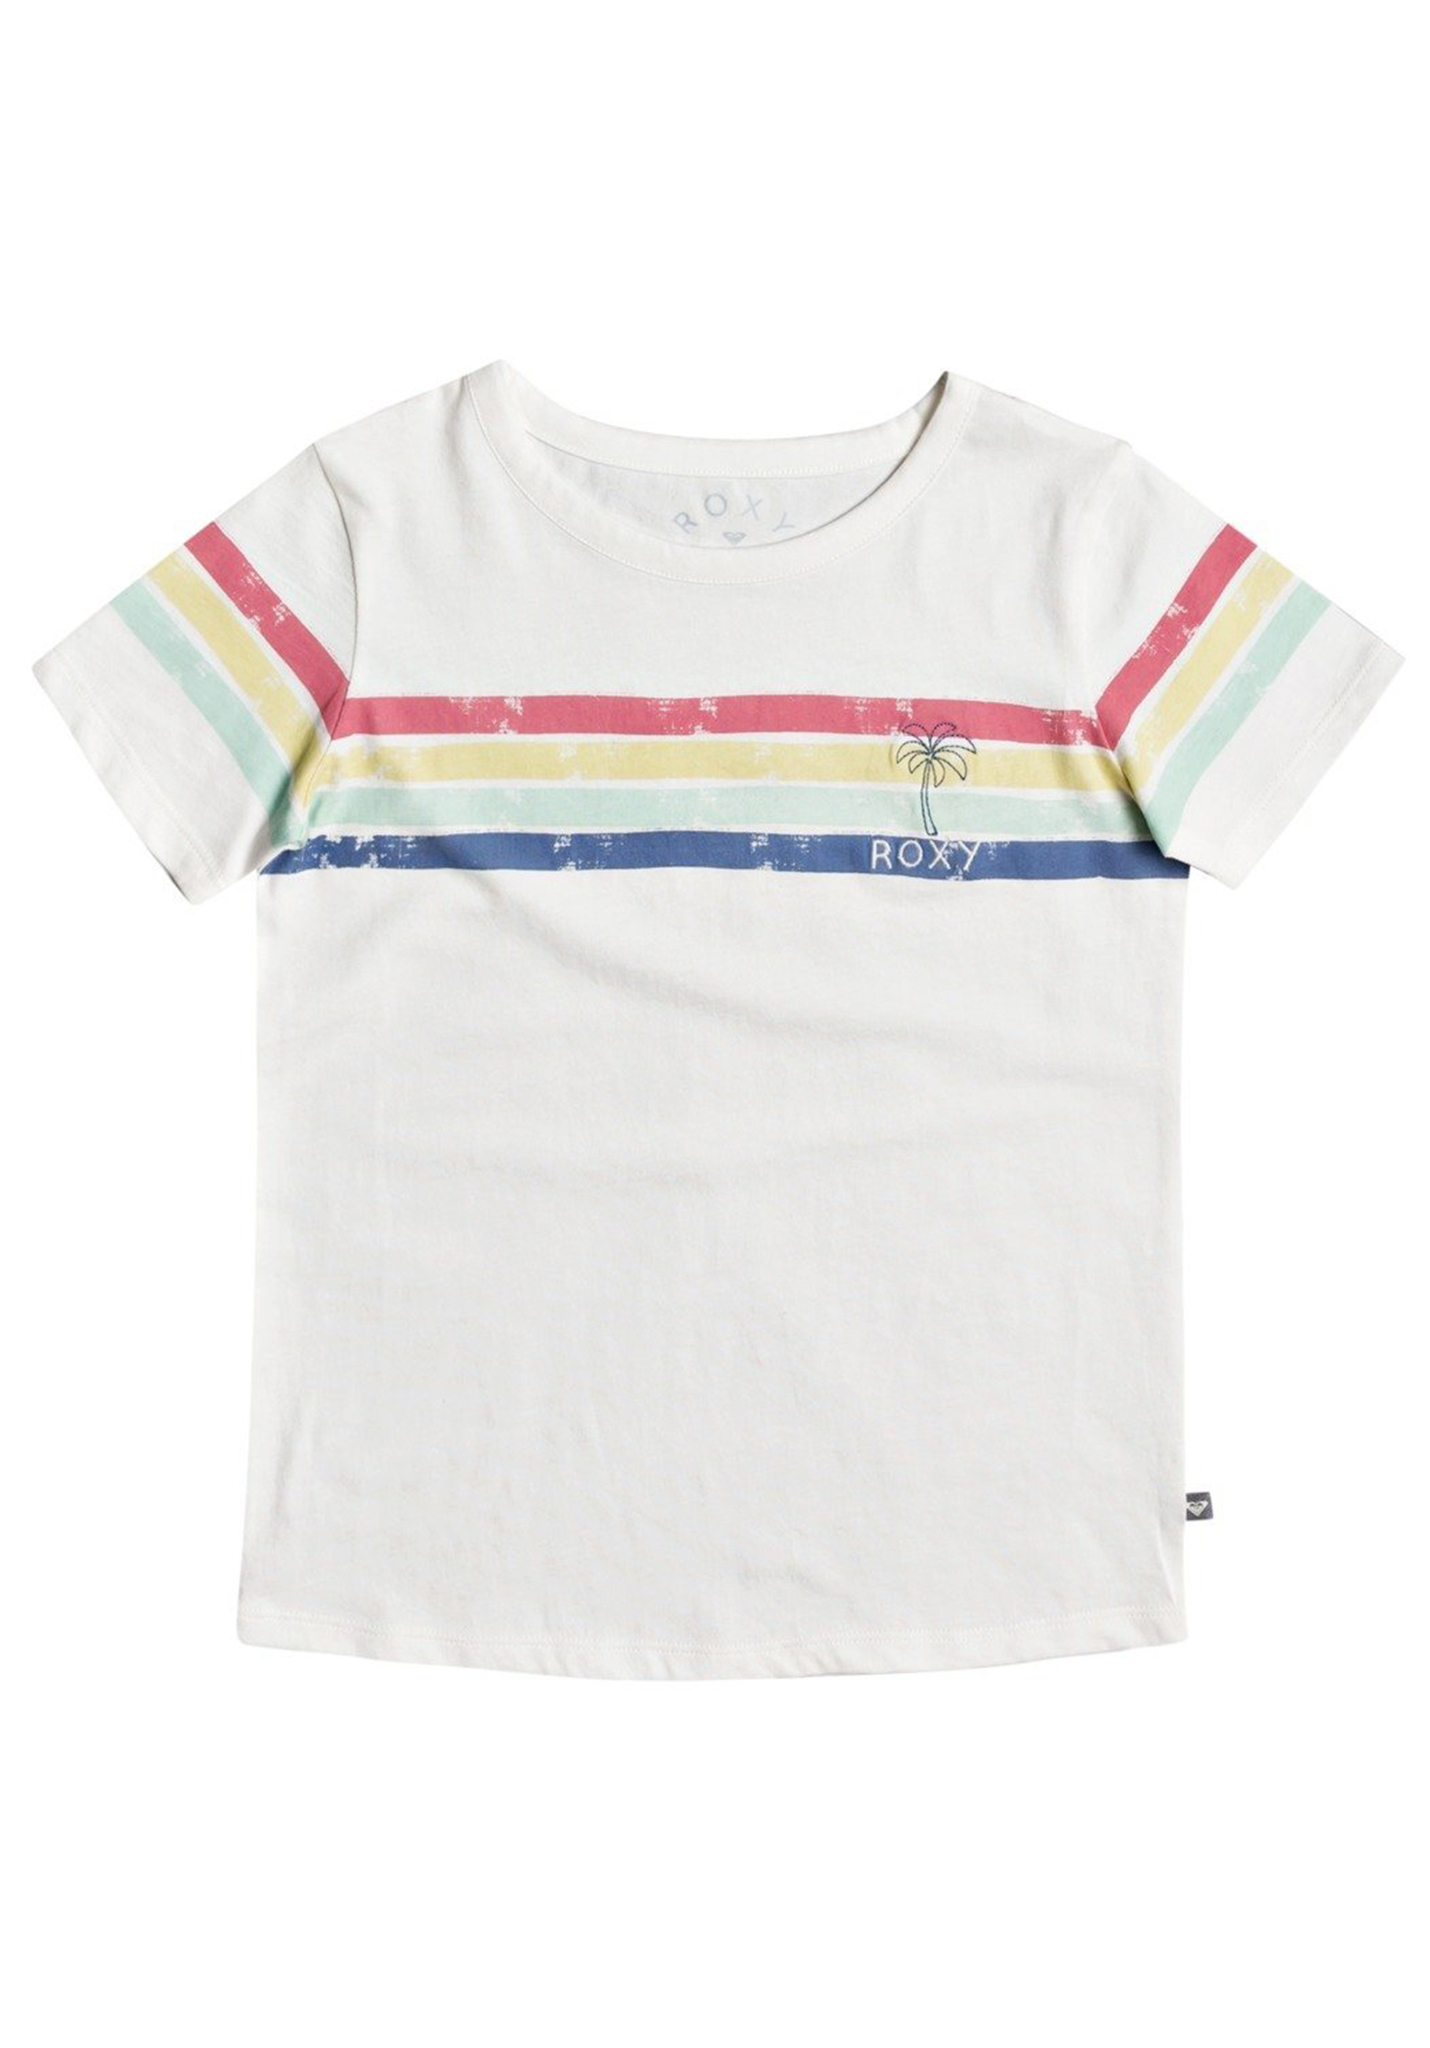 Roxy Bali Dreams T-Shirts snow white 176